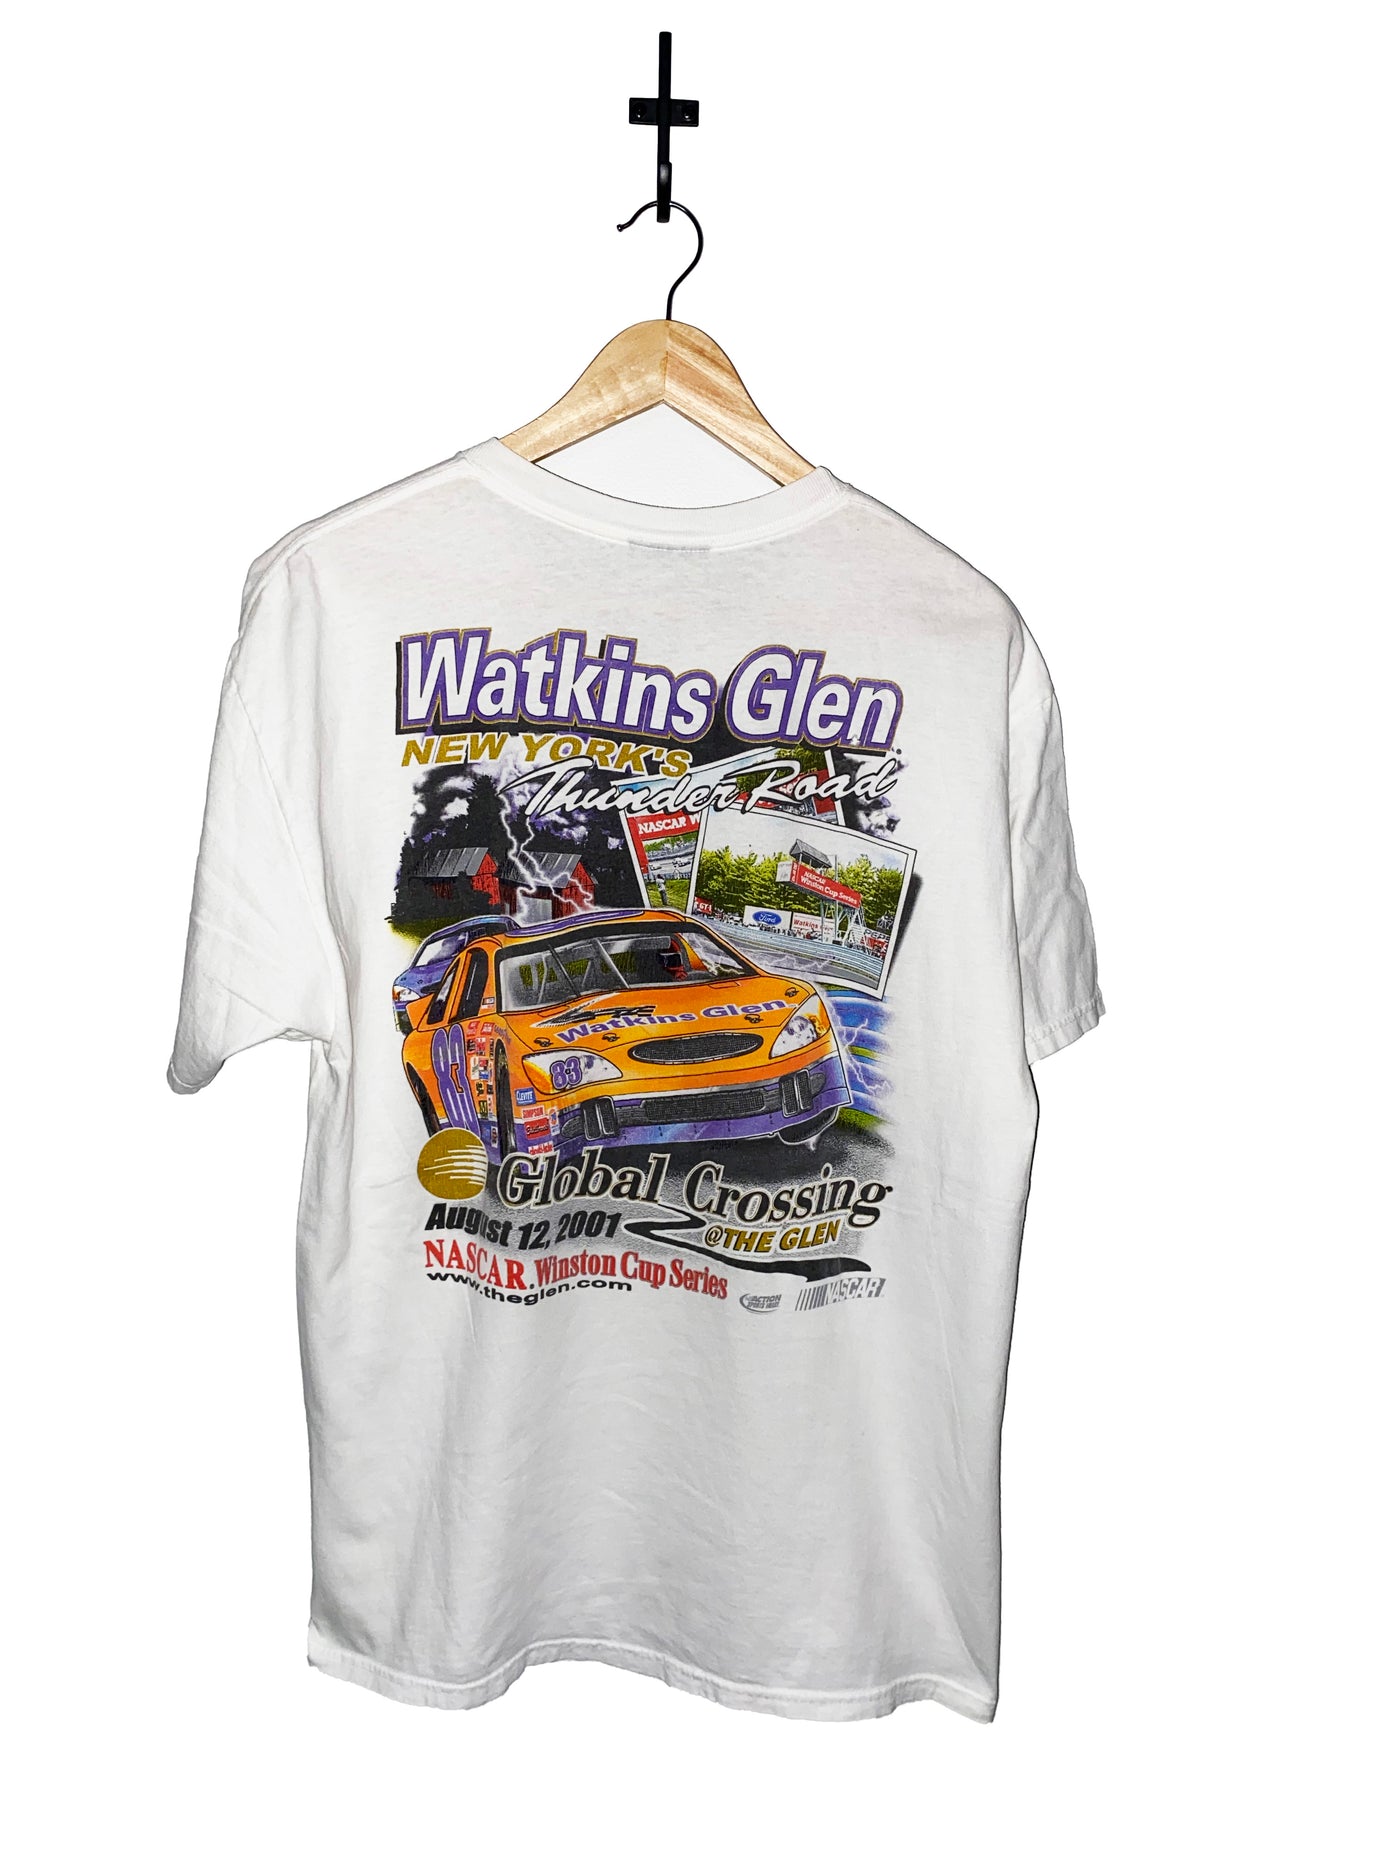 Vintage 2001 Watkins Glen Racing T-Shirt